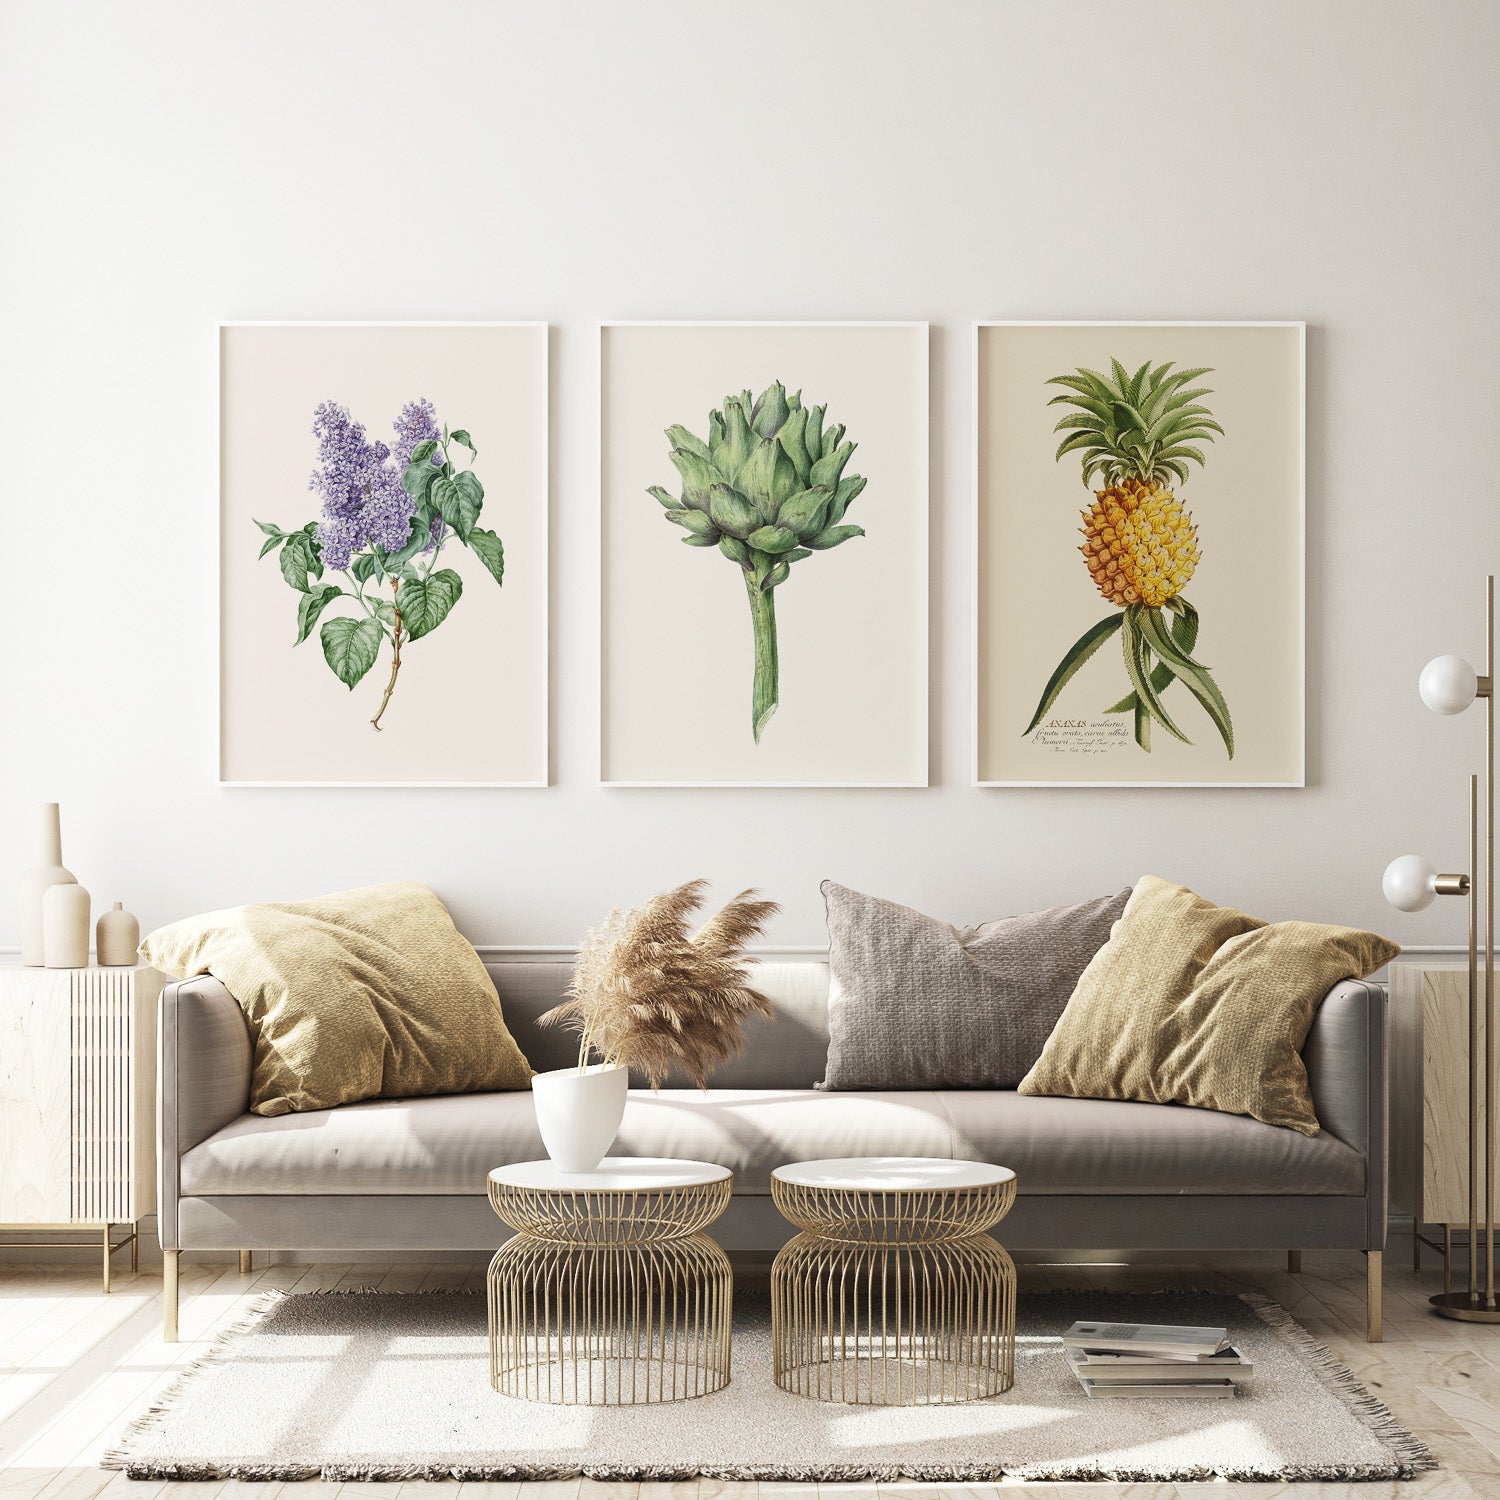 Botaniska tavlor, posters med växter, frukter och grönsaker